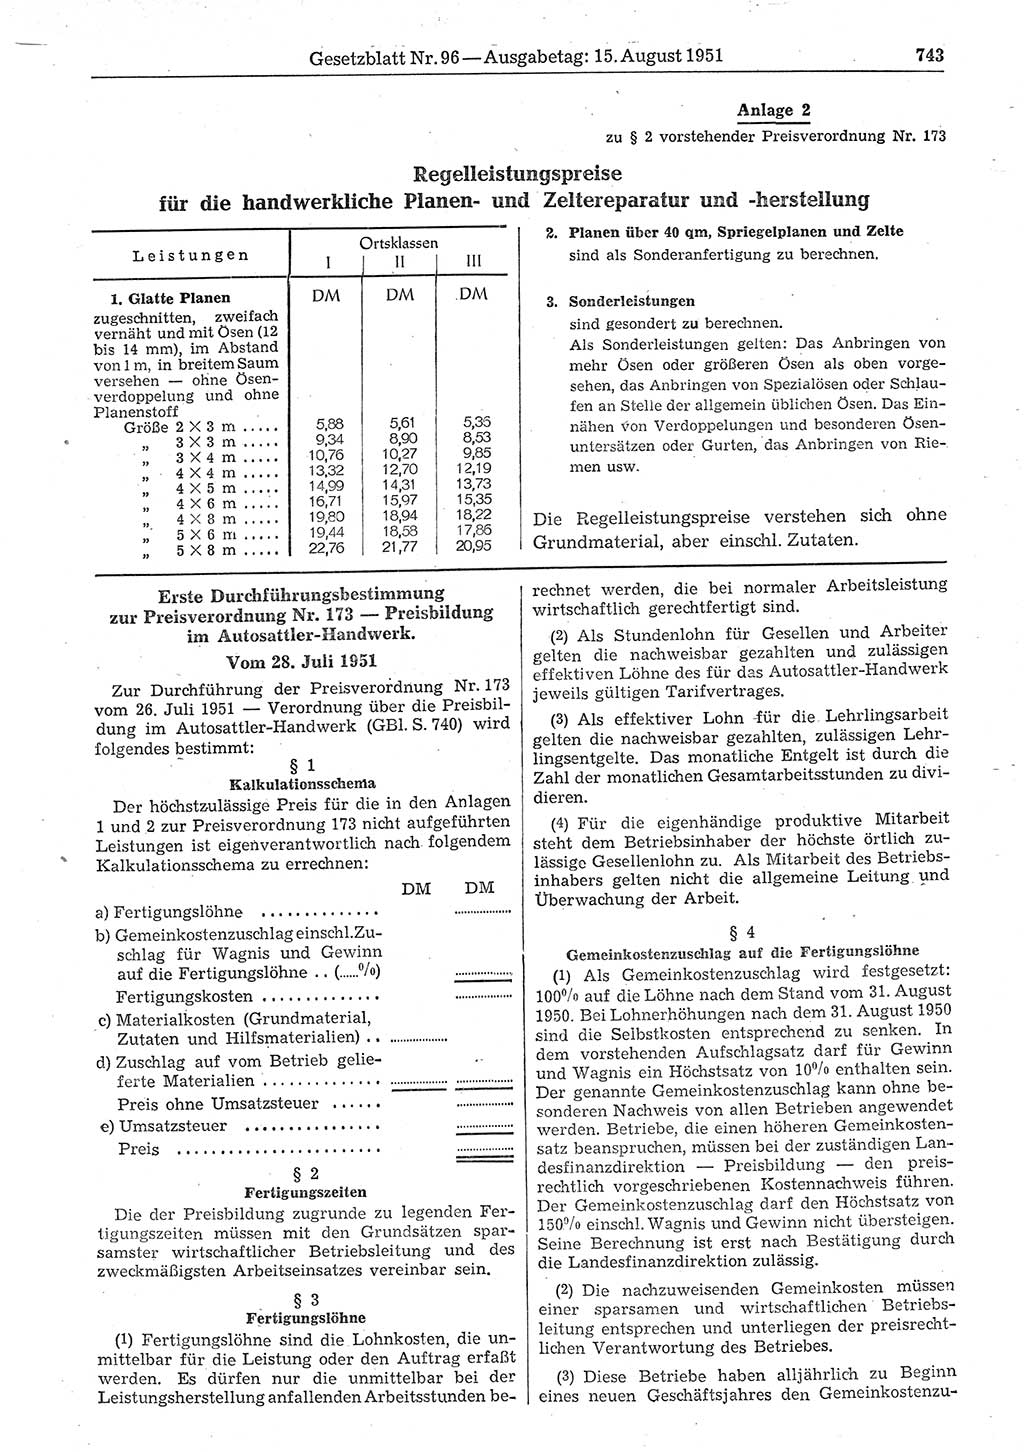 Gesetzblatt (GBl.) der Deutschen Demokratischen Republik (DDR) 1951, Seite 743 (GBl. DDR 1951, S. 743)